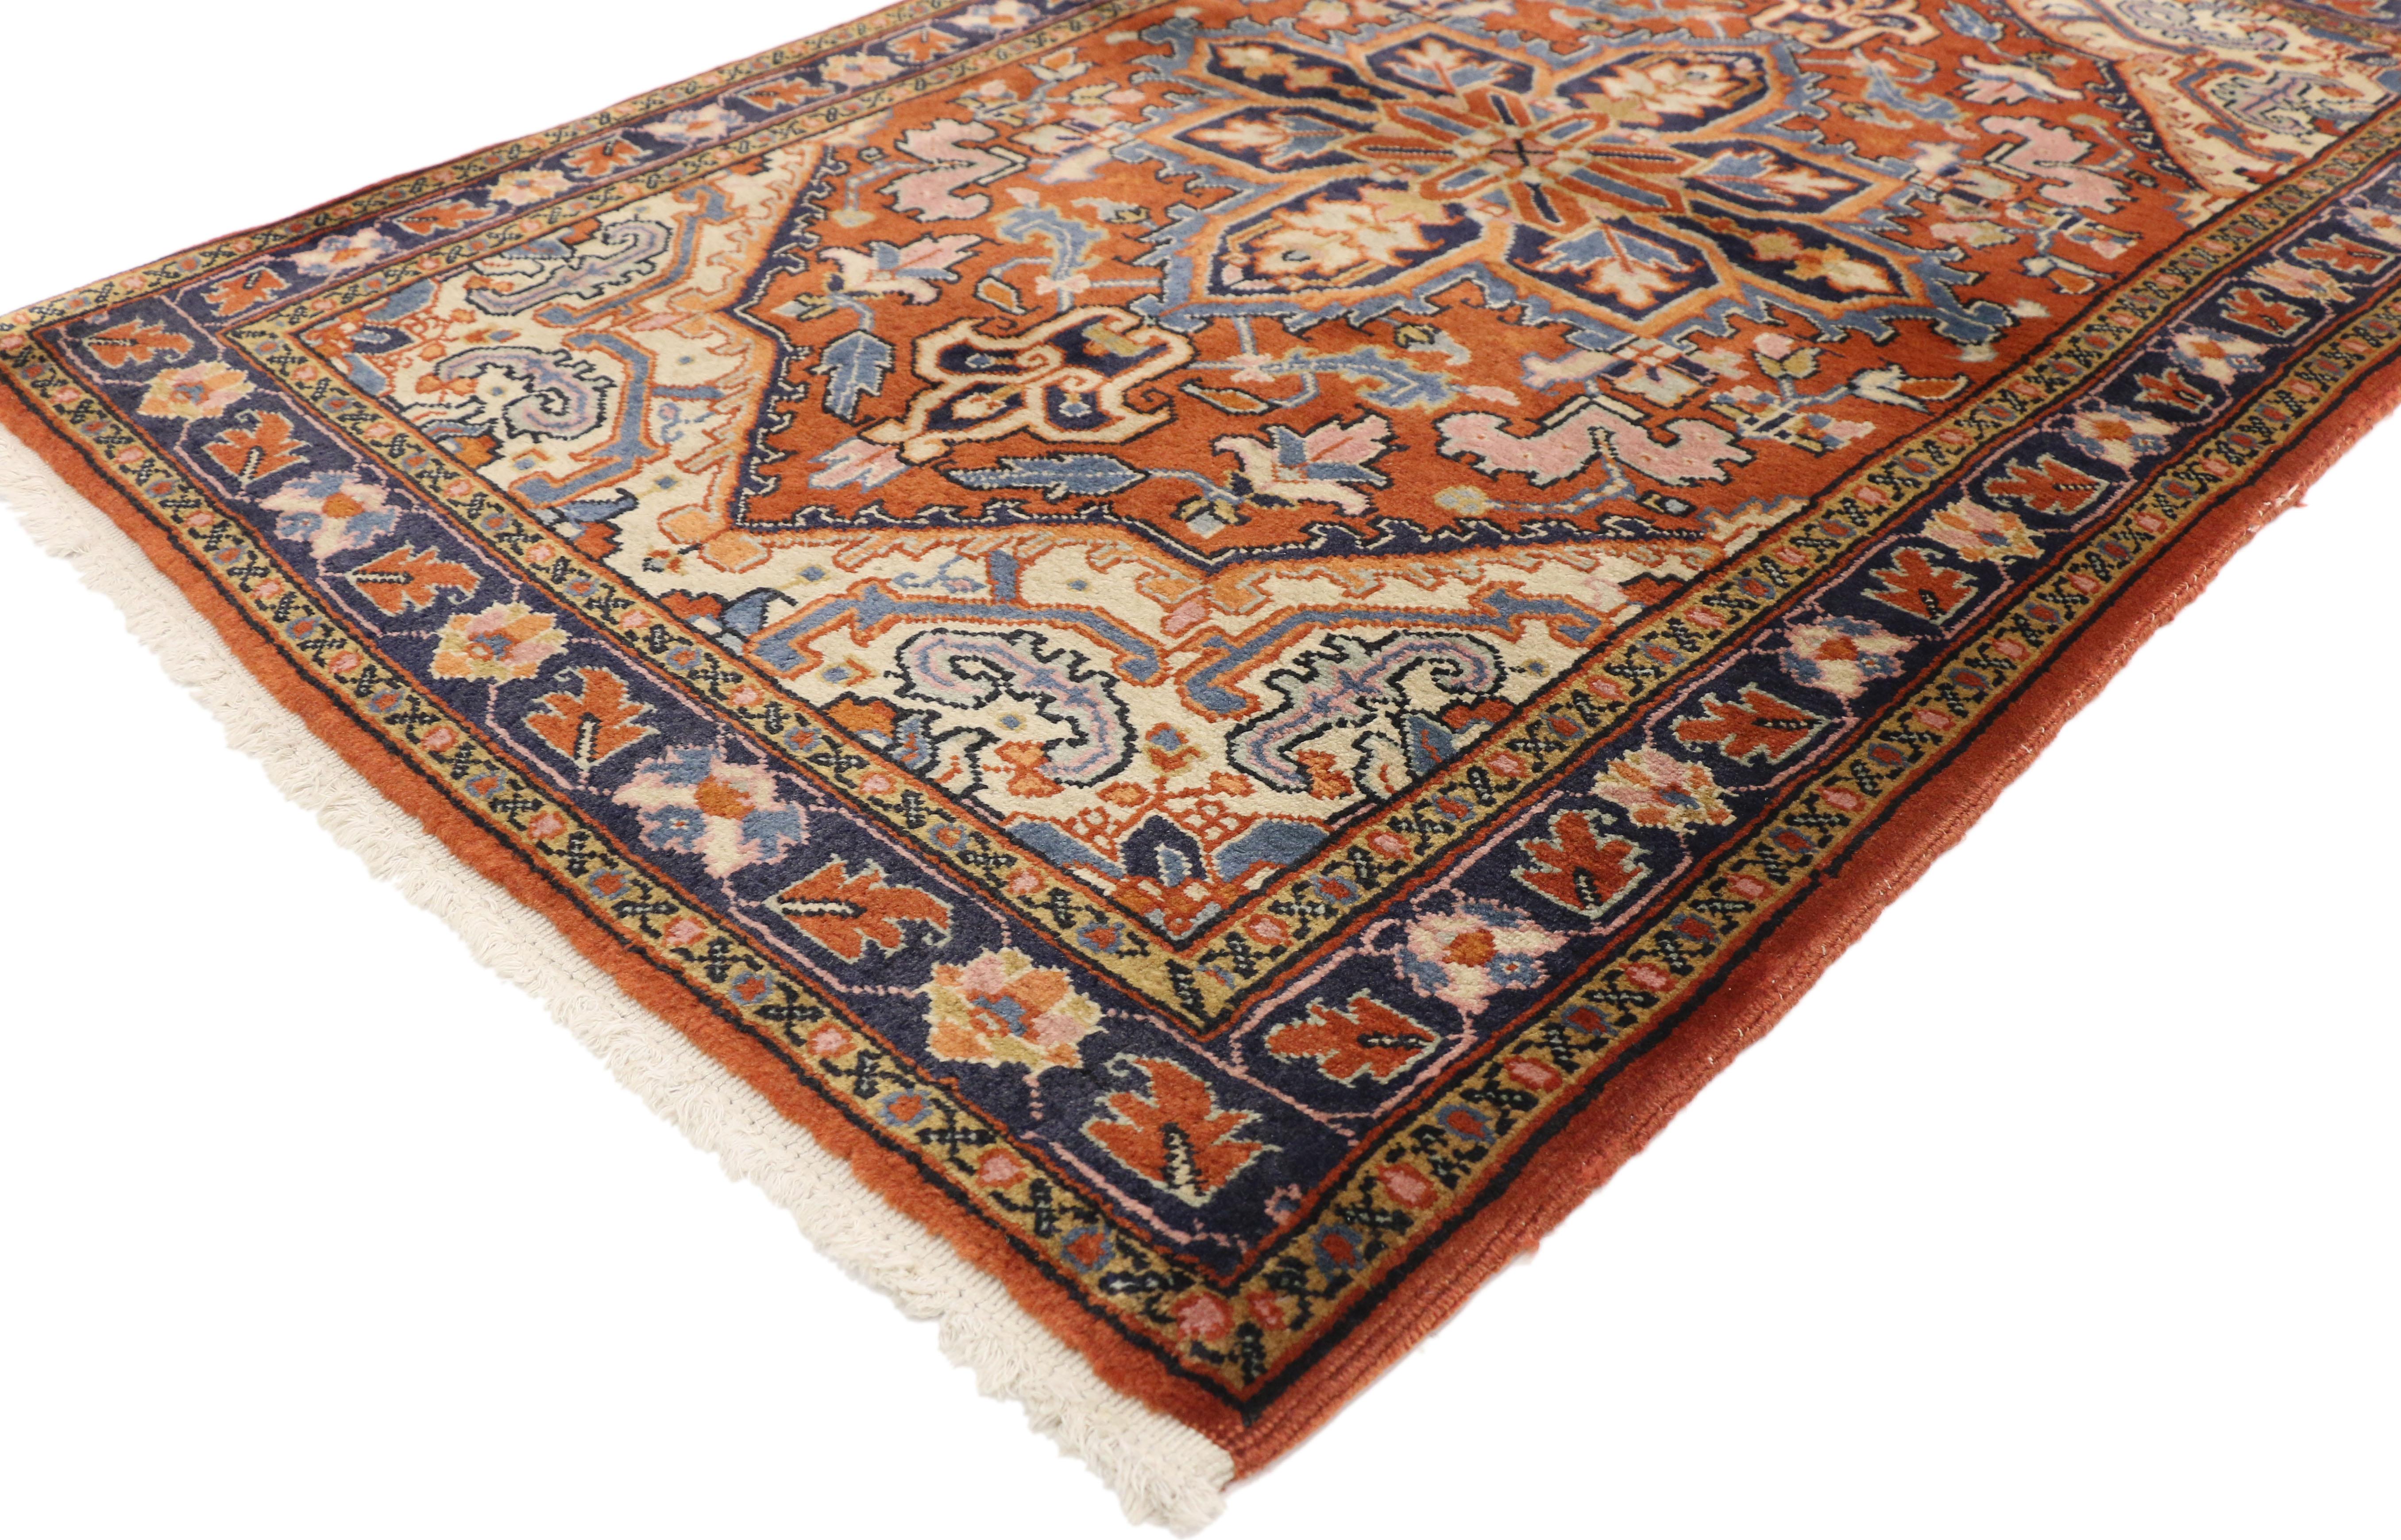 75996, alter persischer Heriz-Teppich im rustikalen Federal-Stil. Dieser traditionelle und königliche Heriz-Teppich mit leuchtenden Farben im rustikalen Federal-Stil besteht aus einem markanten Oktagramm-Medaillon, das mit Palmetten-Finials